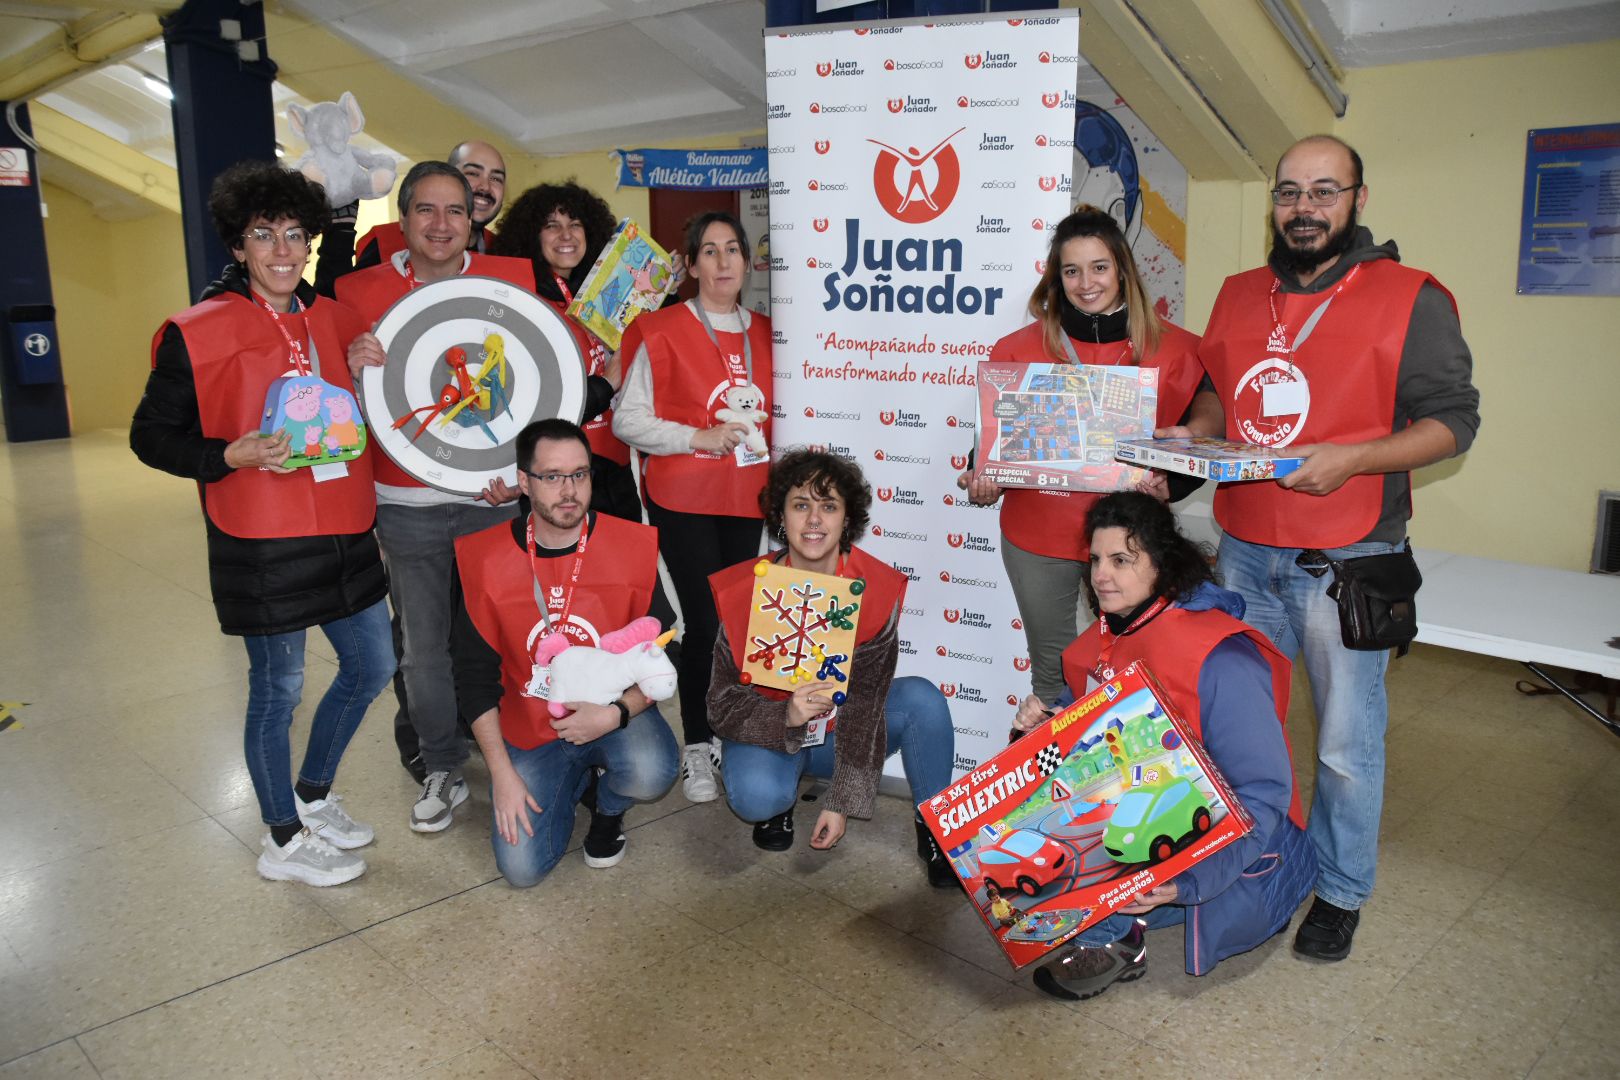 Éxito de la campaña solidaria de recogida de juguetes, juegos y peluches del Recoletas en colaboración con la Fundación JuanSoñador